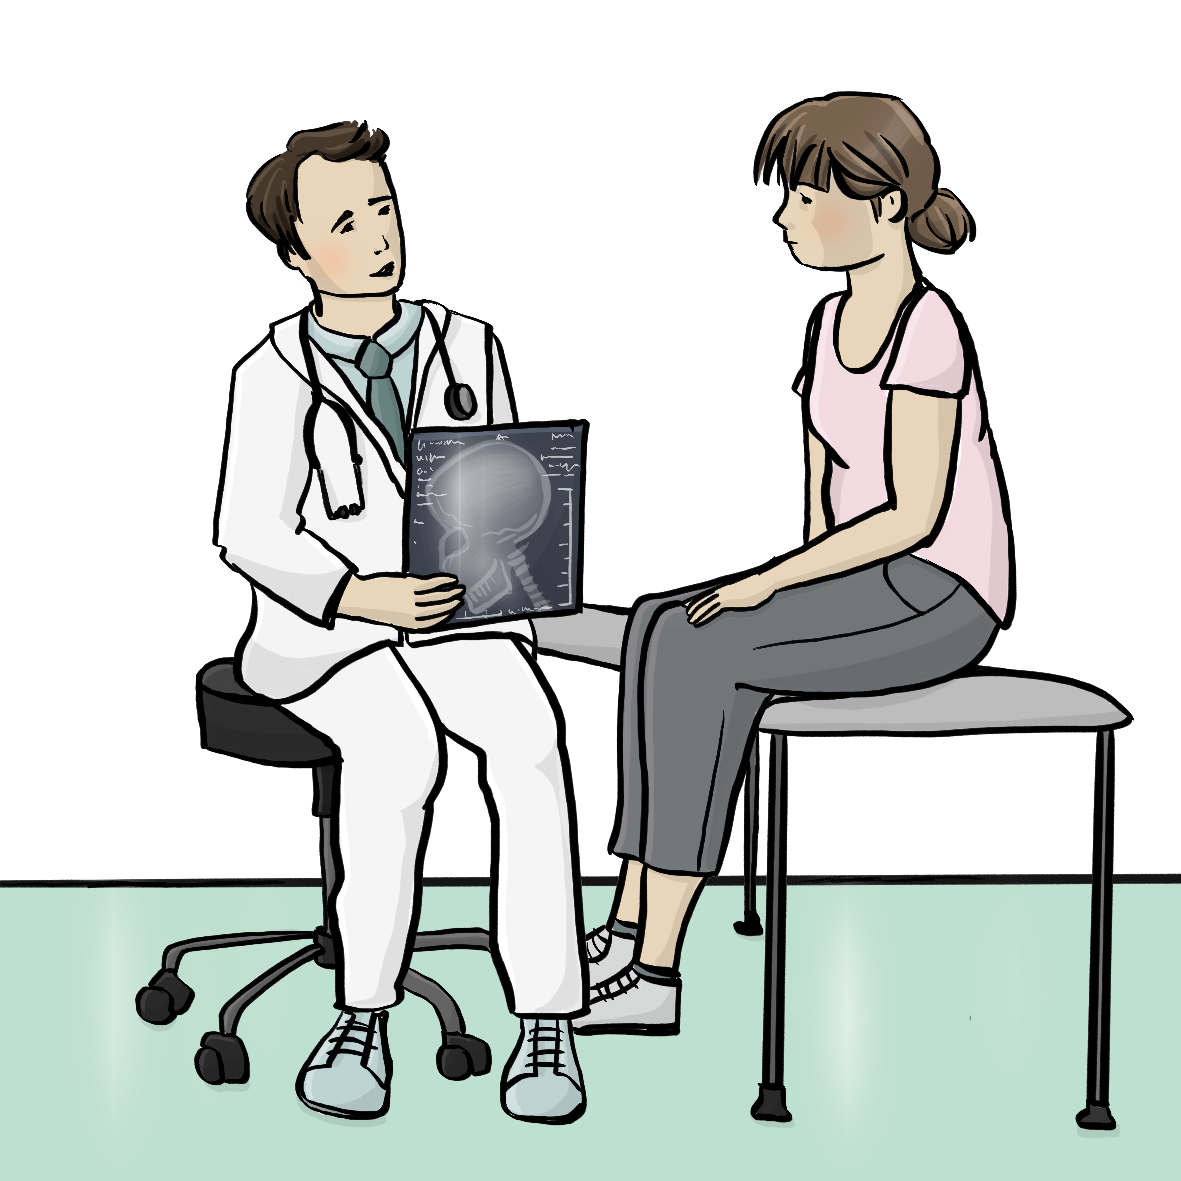 Eine Frau sitzt auf einer Untersuchungs-Liege. Vor ihr sitzt ein Arzt auf einem Stuhl. Der Arzt hält eine Röntgen-Aufnahme in der Hand. 